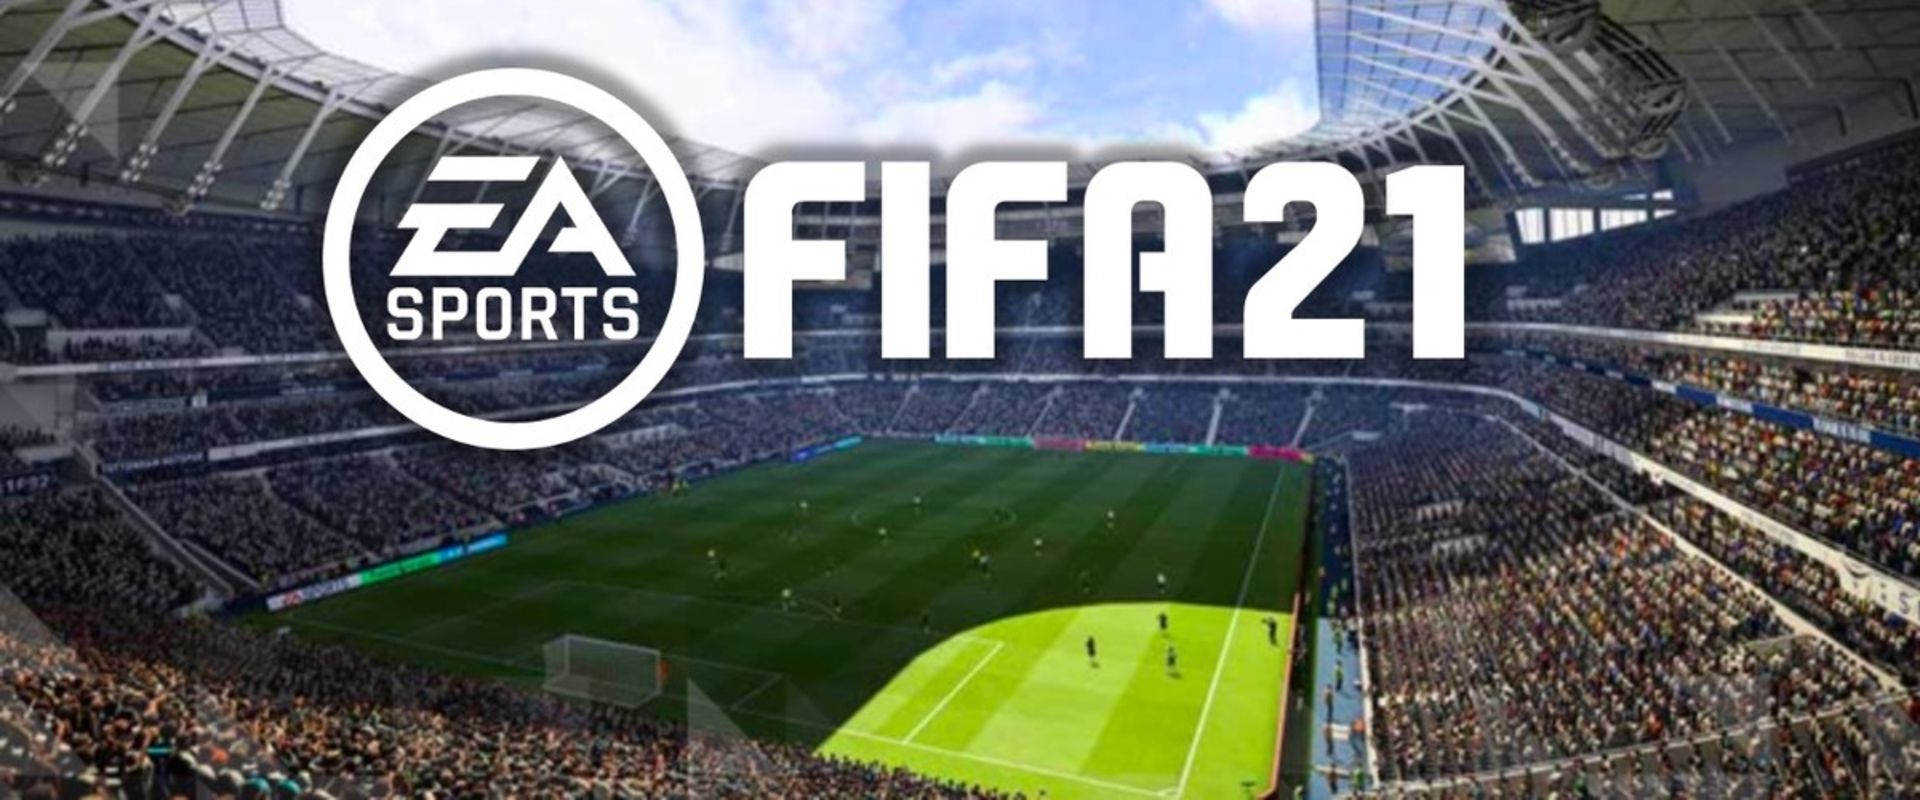 Három új csel is bekerül a FIFA21-ben, mutatjuk melyek azok